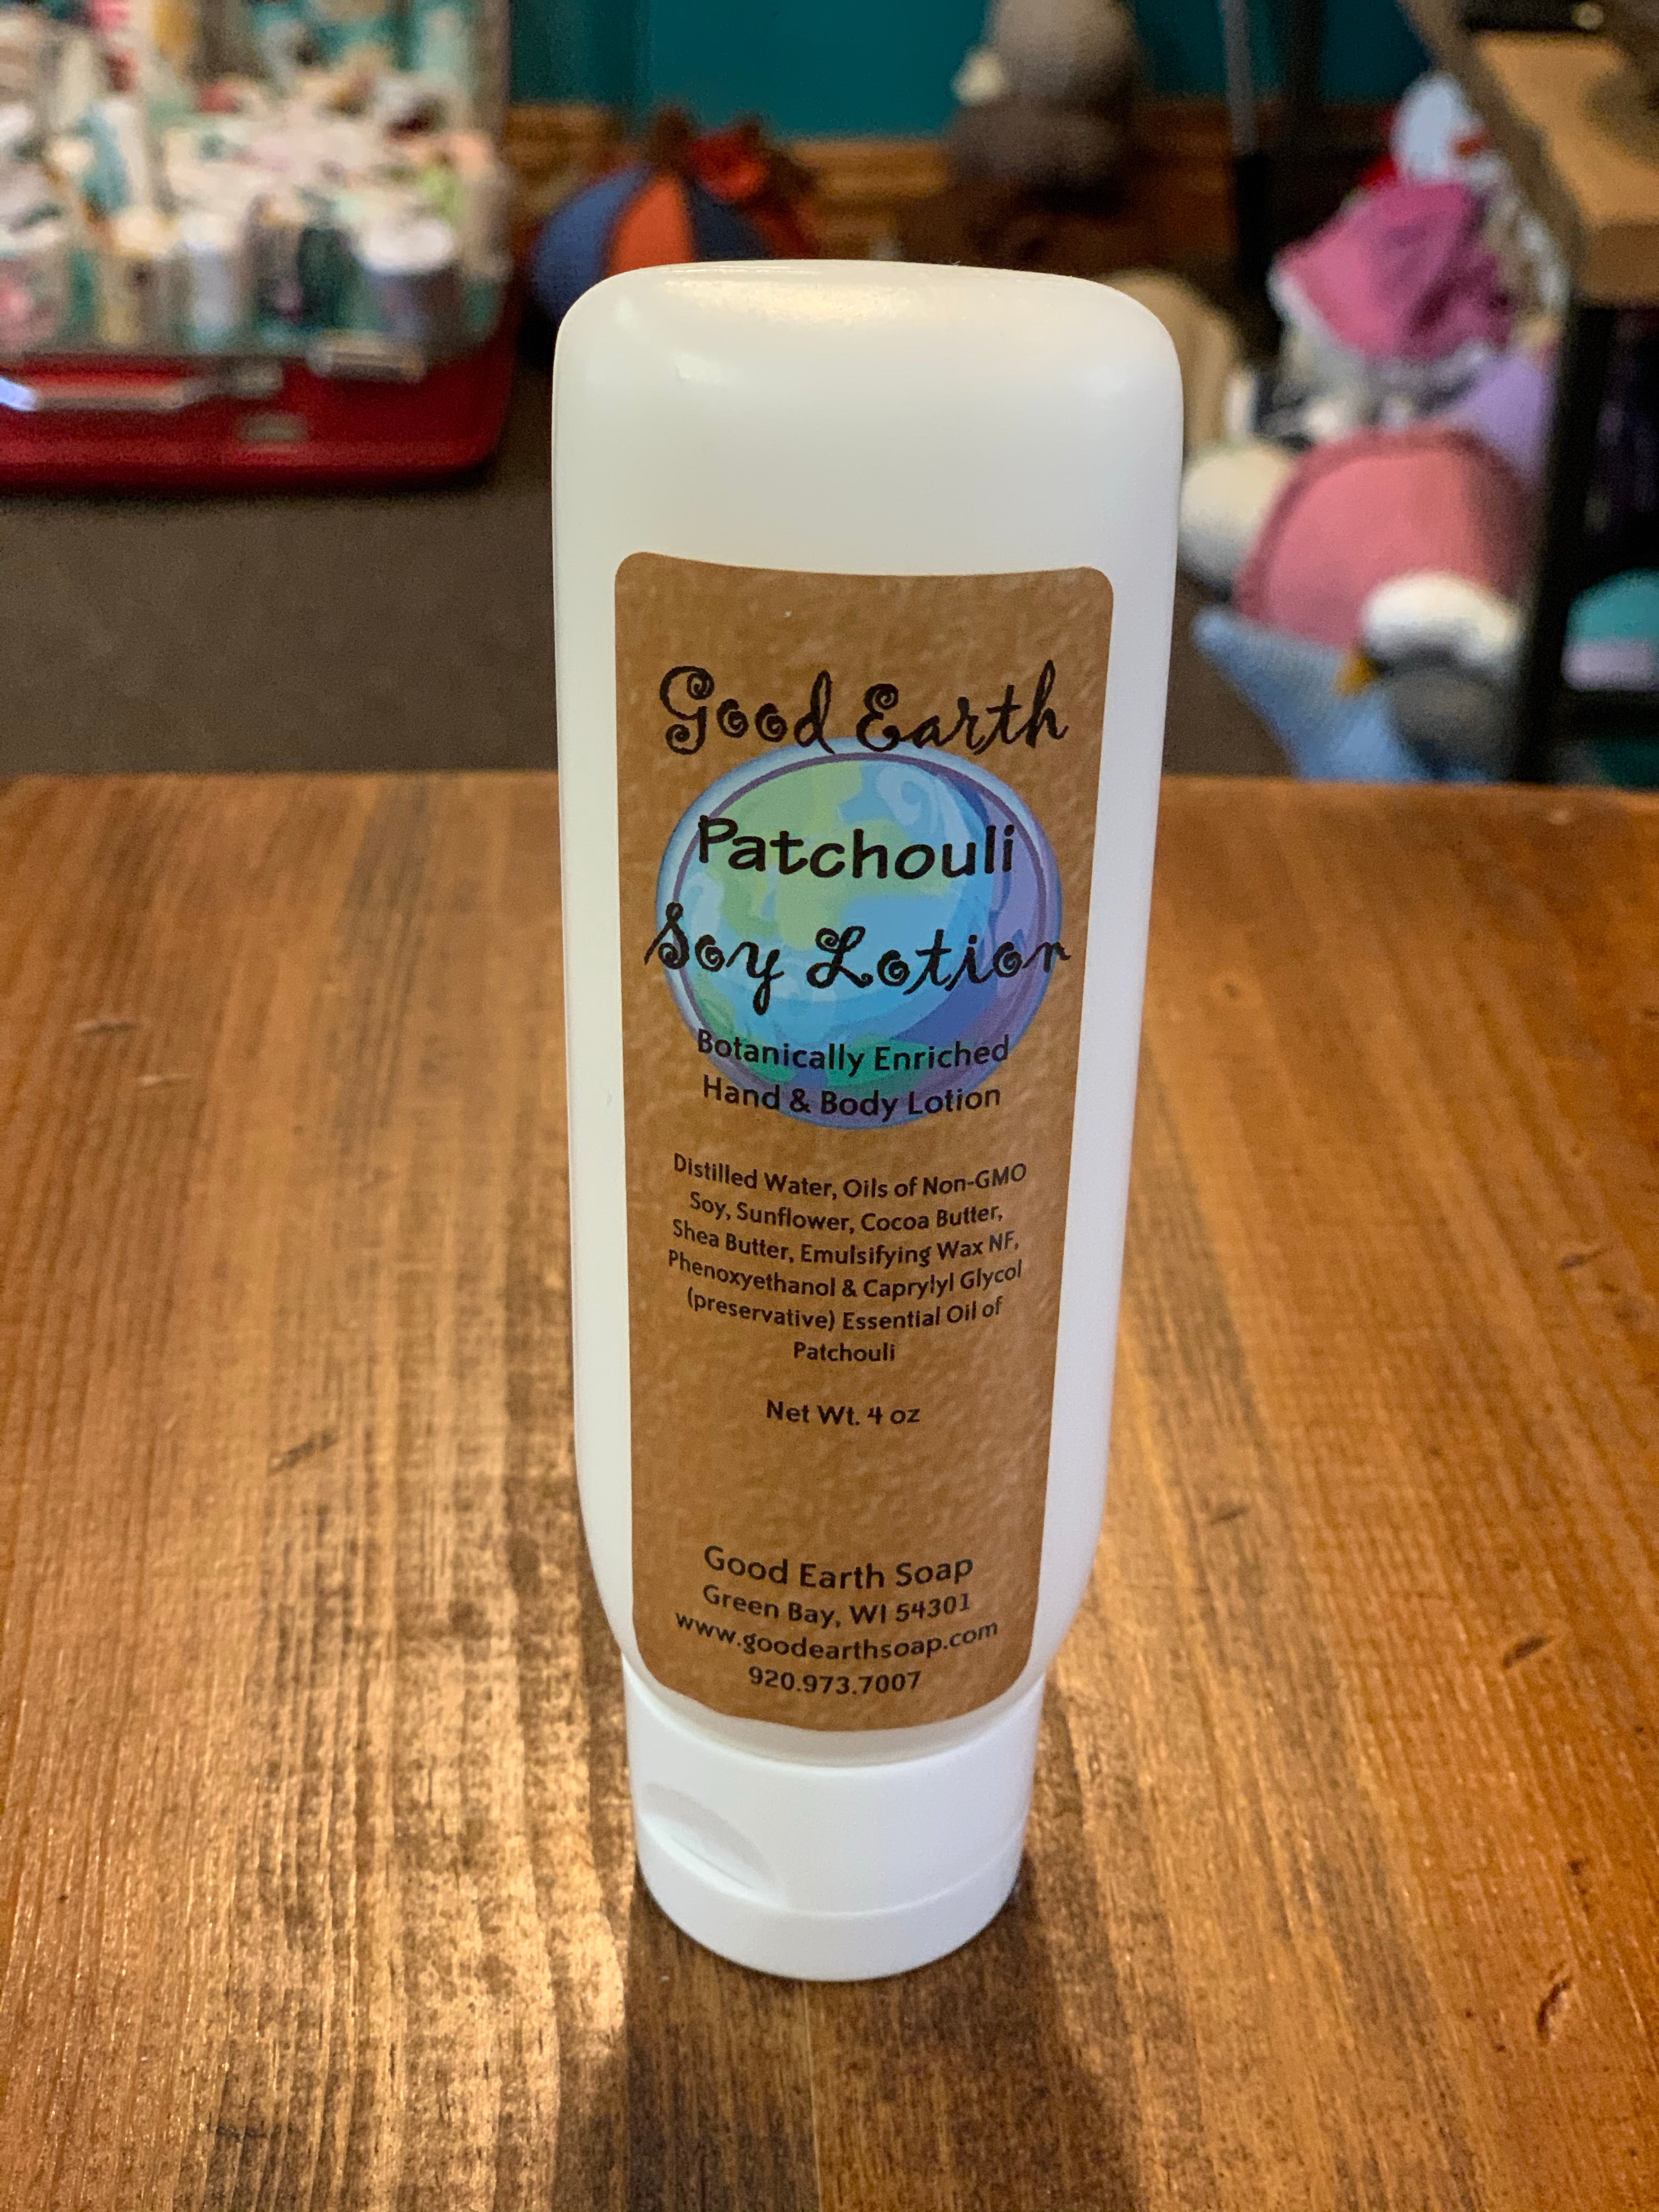 Patchouli Vanilla essential oil body milk / Best moisturizer